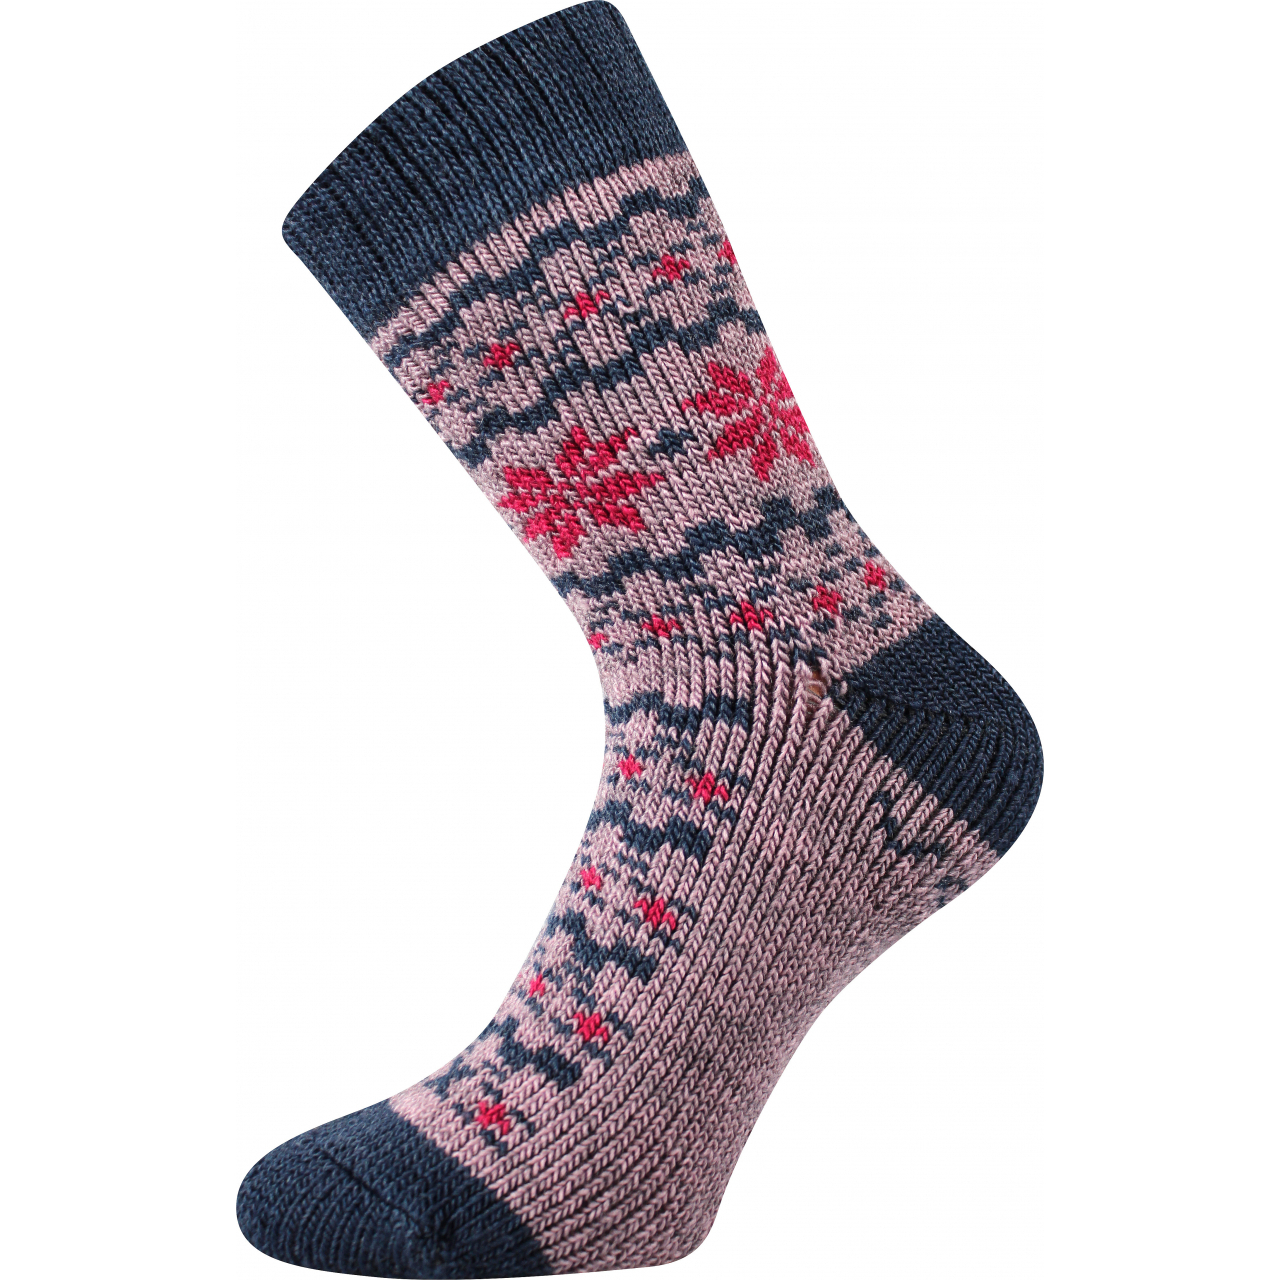 Ponožky unisex zimní Voxx Trondelag - světle růžové, 39-42